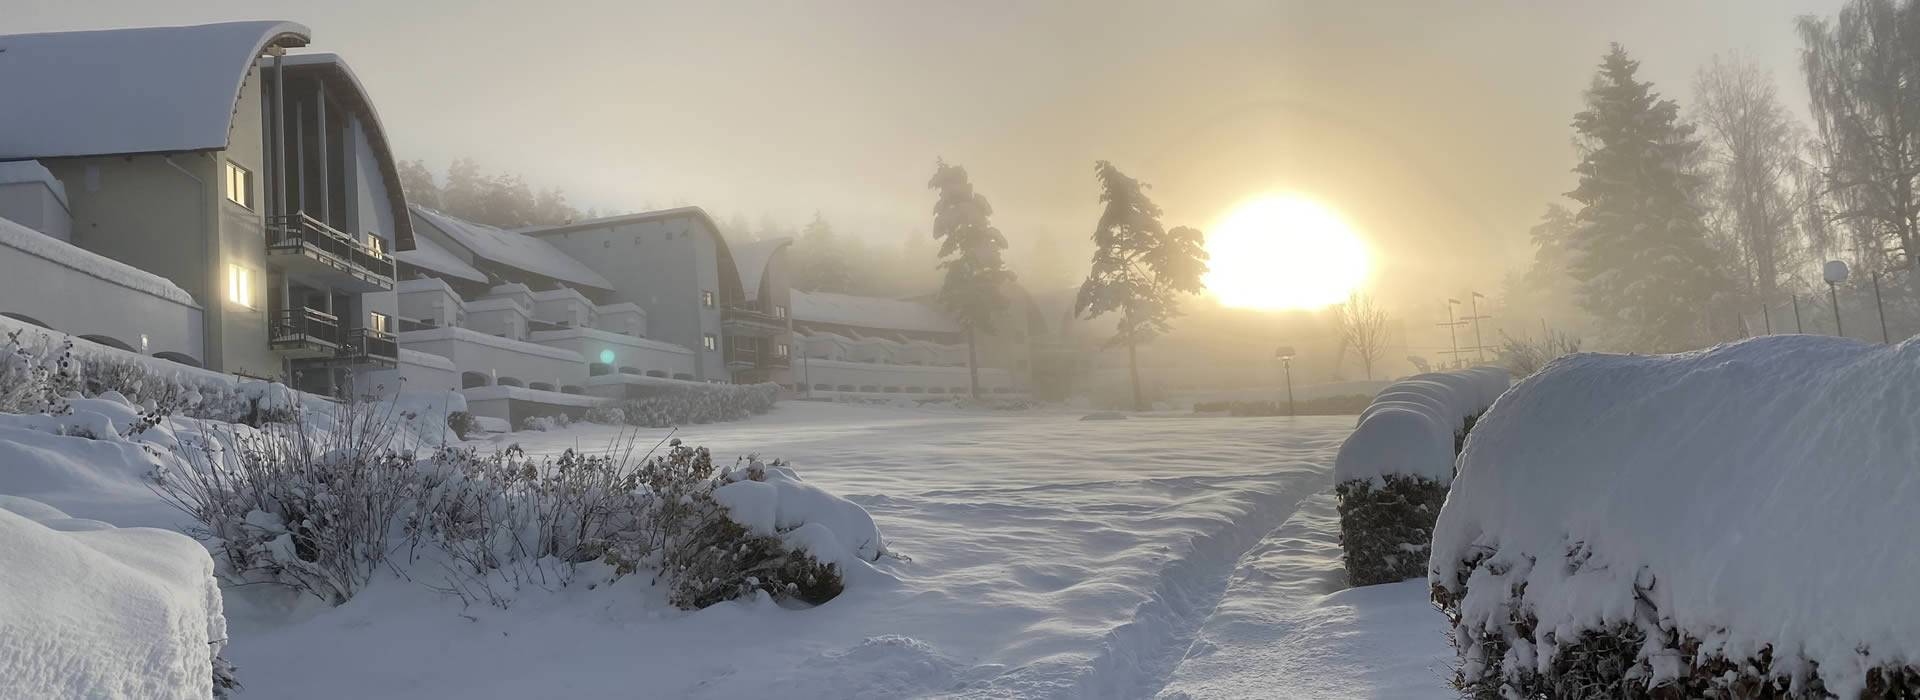 Lipno Lake Resort zapadaný sněhem a při východu slunce